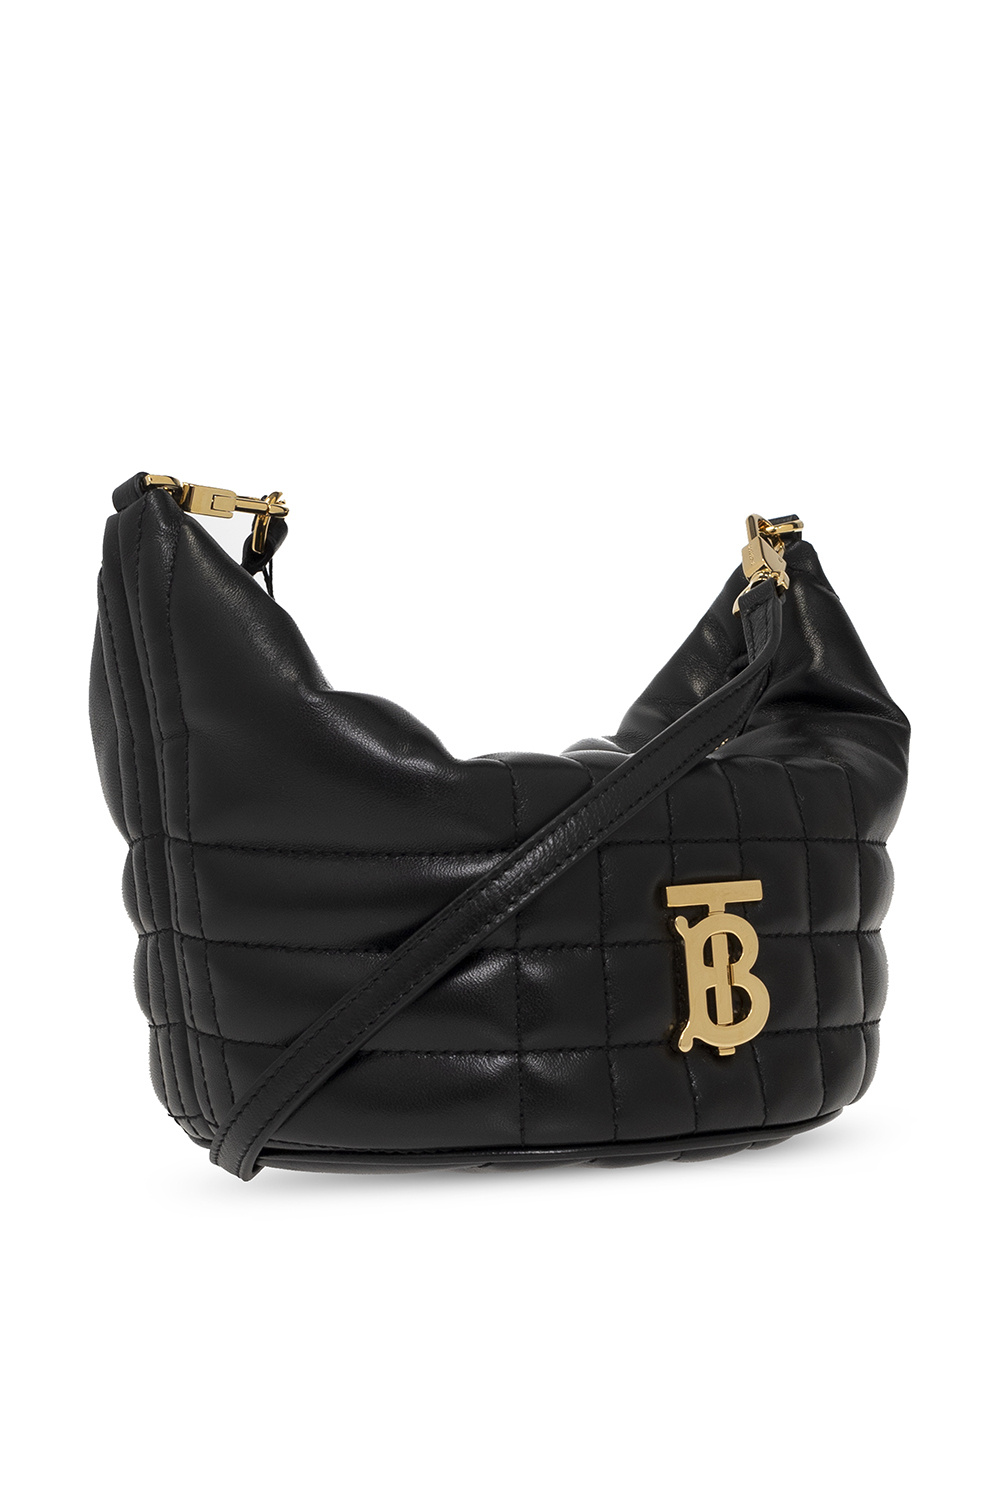 Black 'Lola Mini' shoulder bag Burberry - Vitkac TW